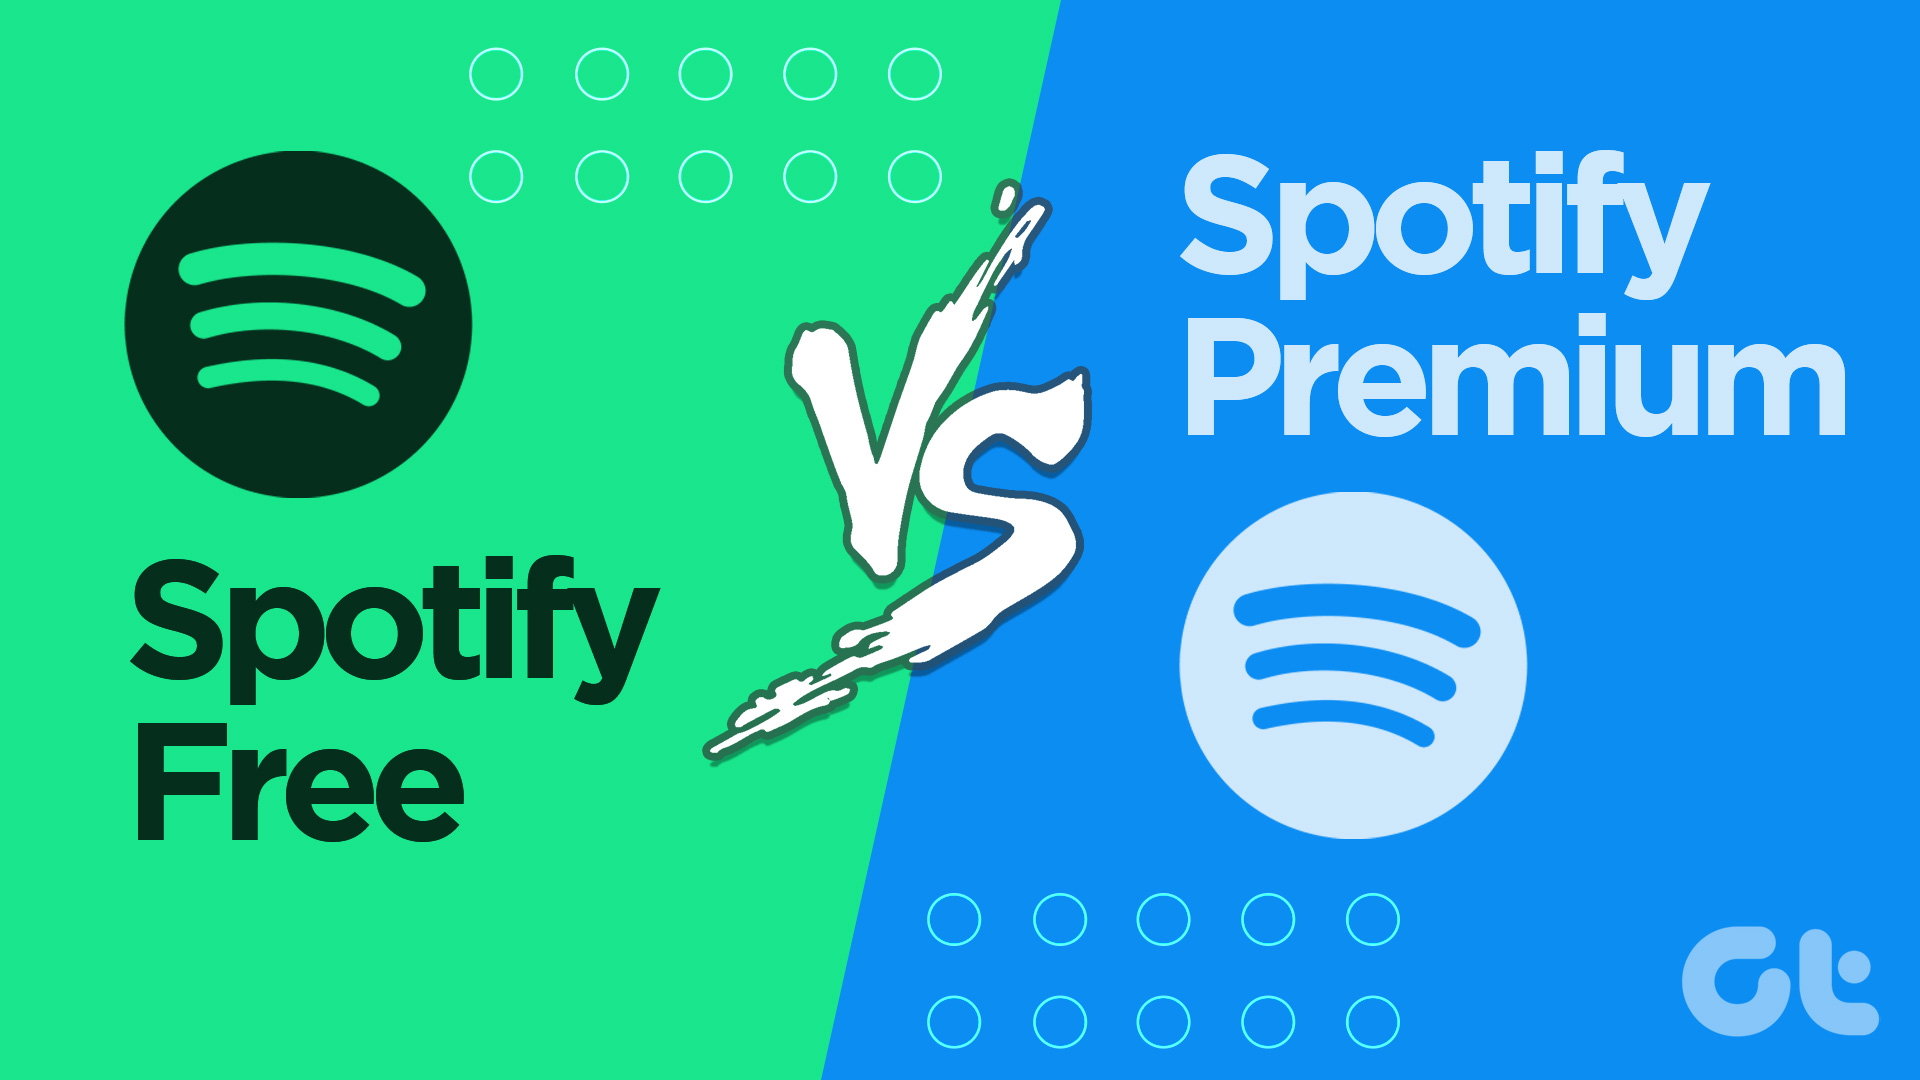 Spotify Free vs. Spotify Premium